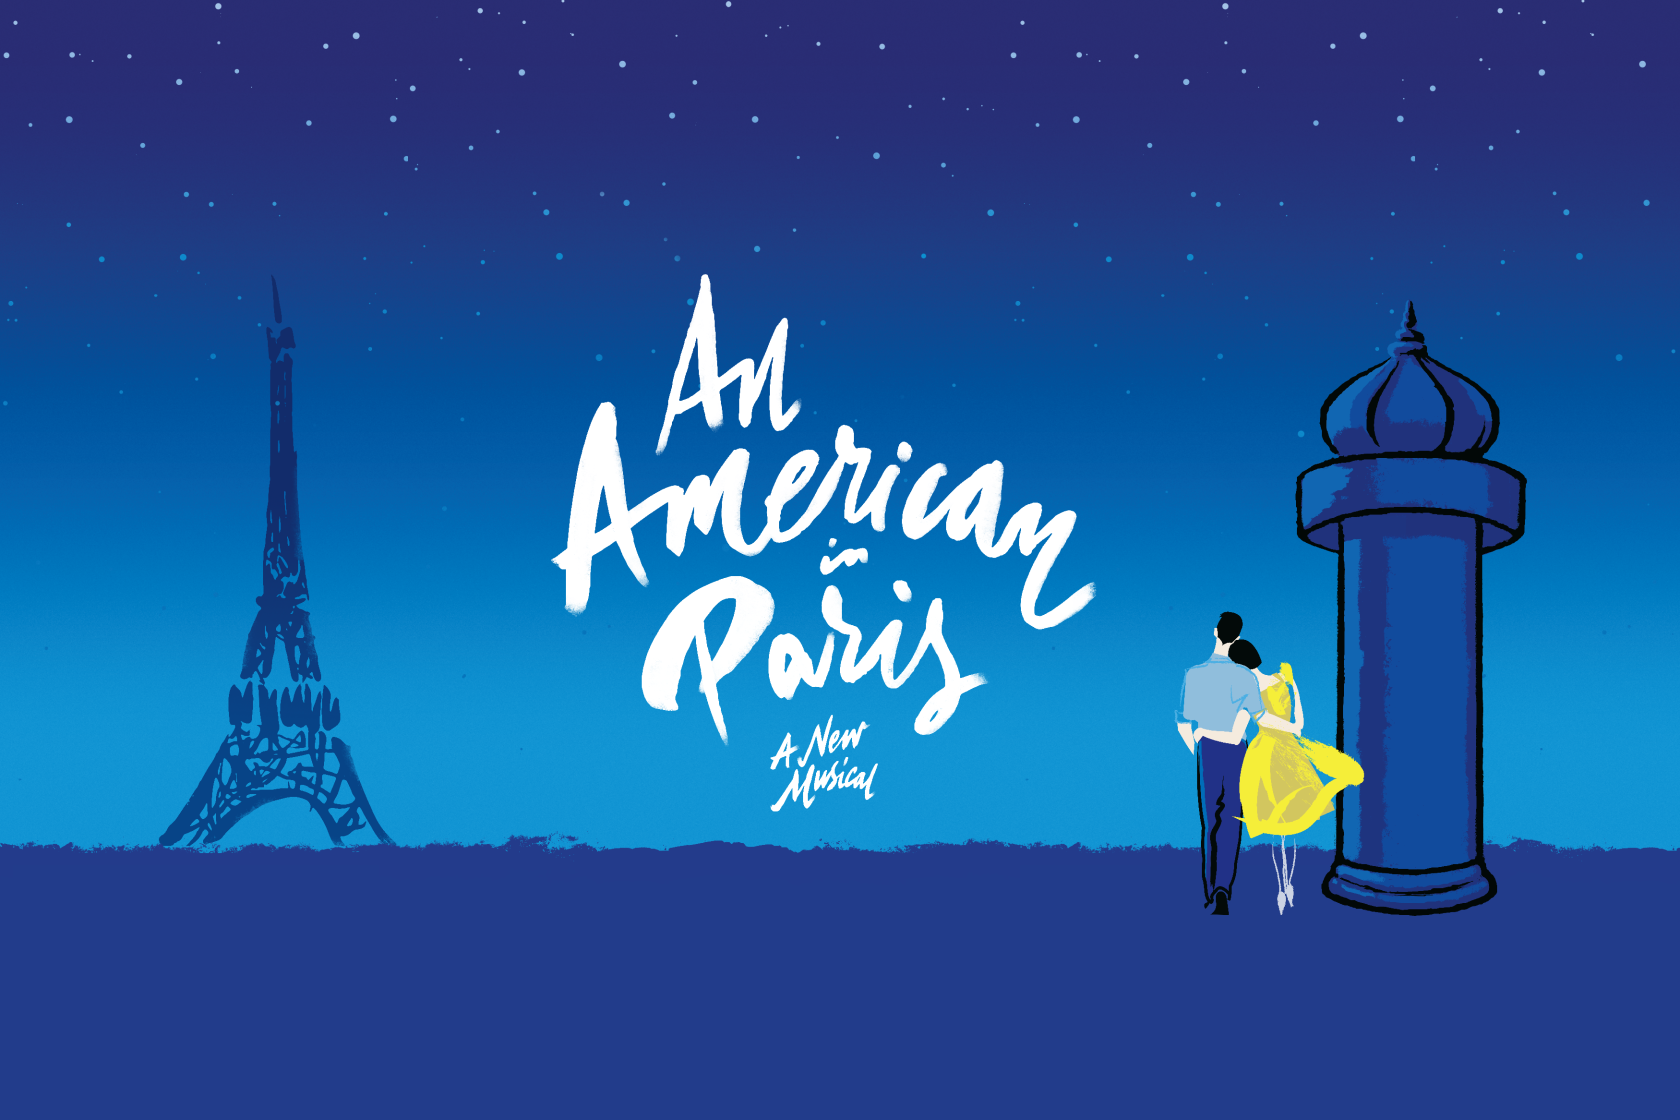 記事「劇団四季より新作ミュージカル『パリのアメリカ人』〜小粋に、華やかに、スタイリッシュなダンスが描く、パリの恋〜」の画像